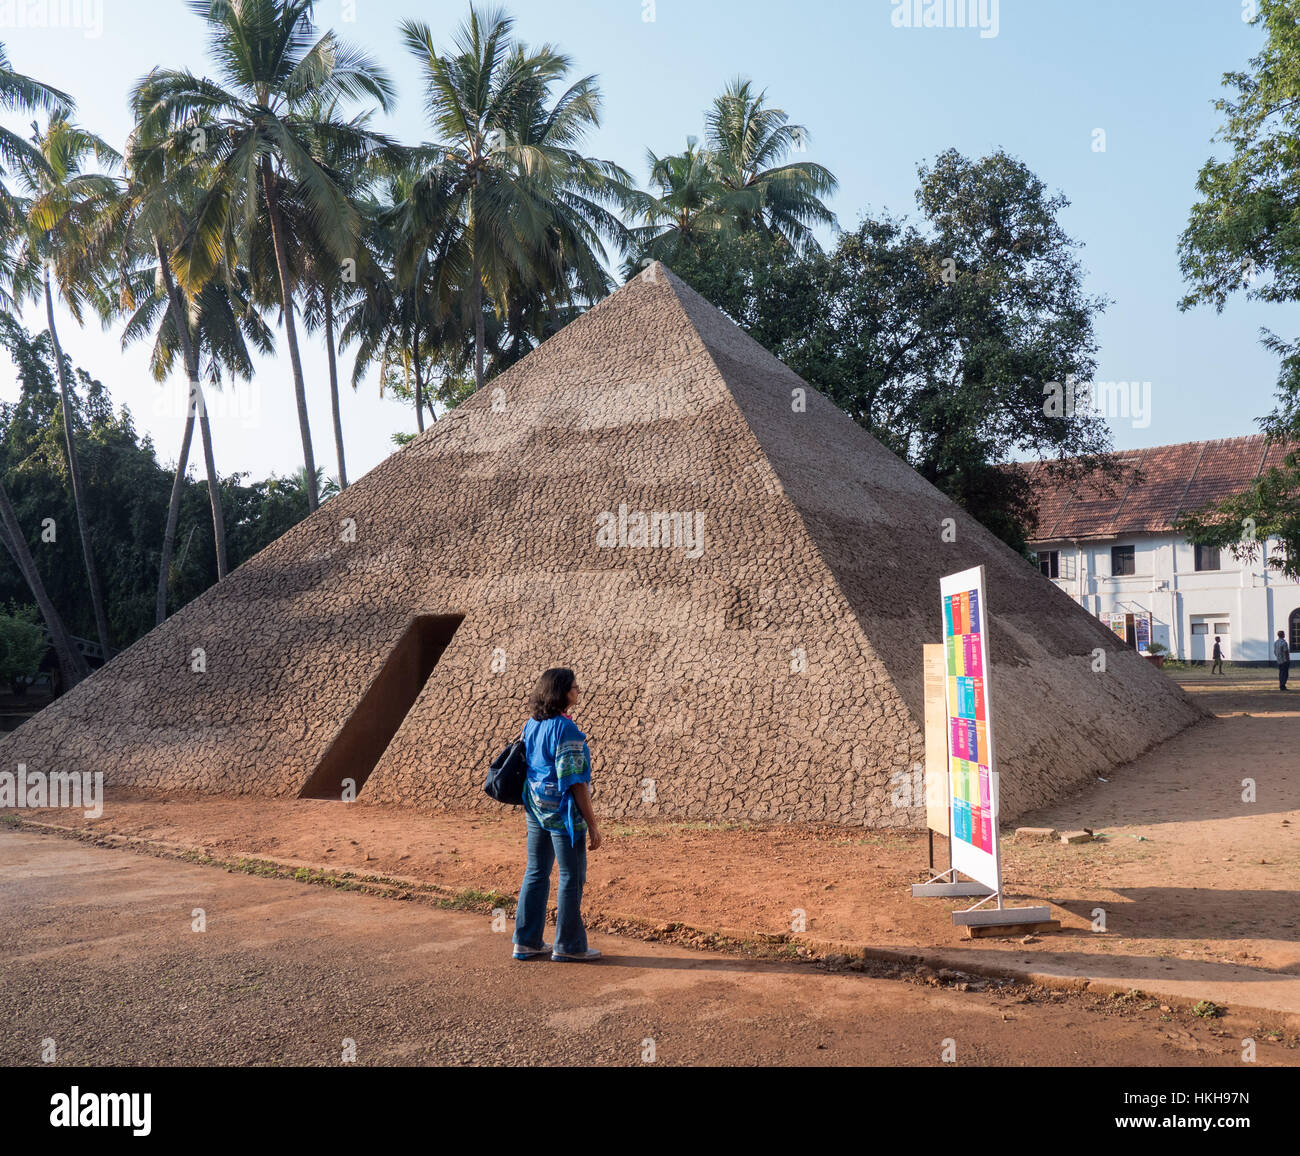 La pirámide de poetas exiliados por Ales Steger en Kochi-Muziris Biennale en India Foto de stock